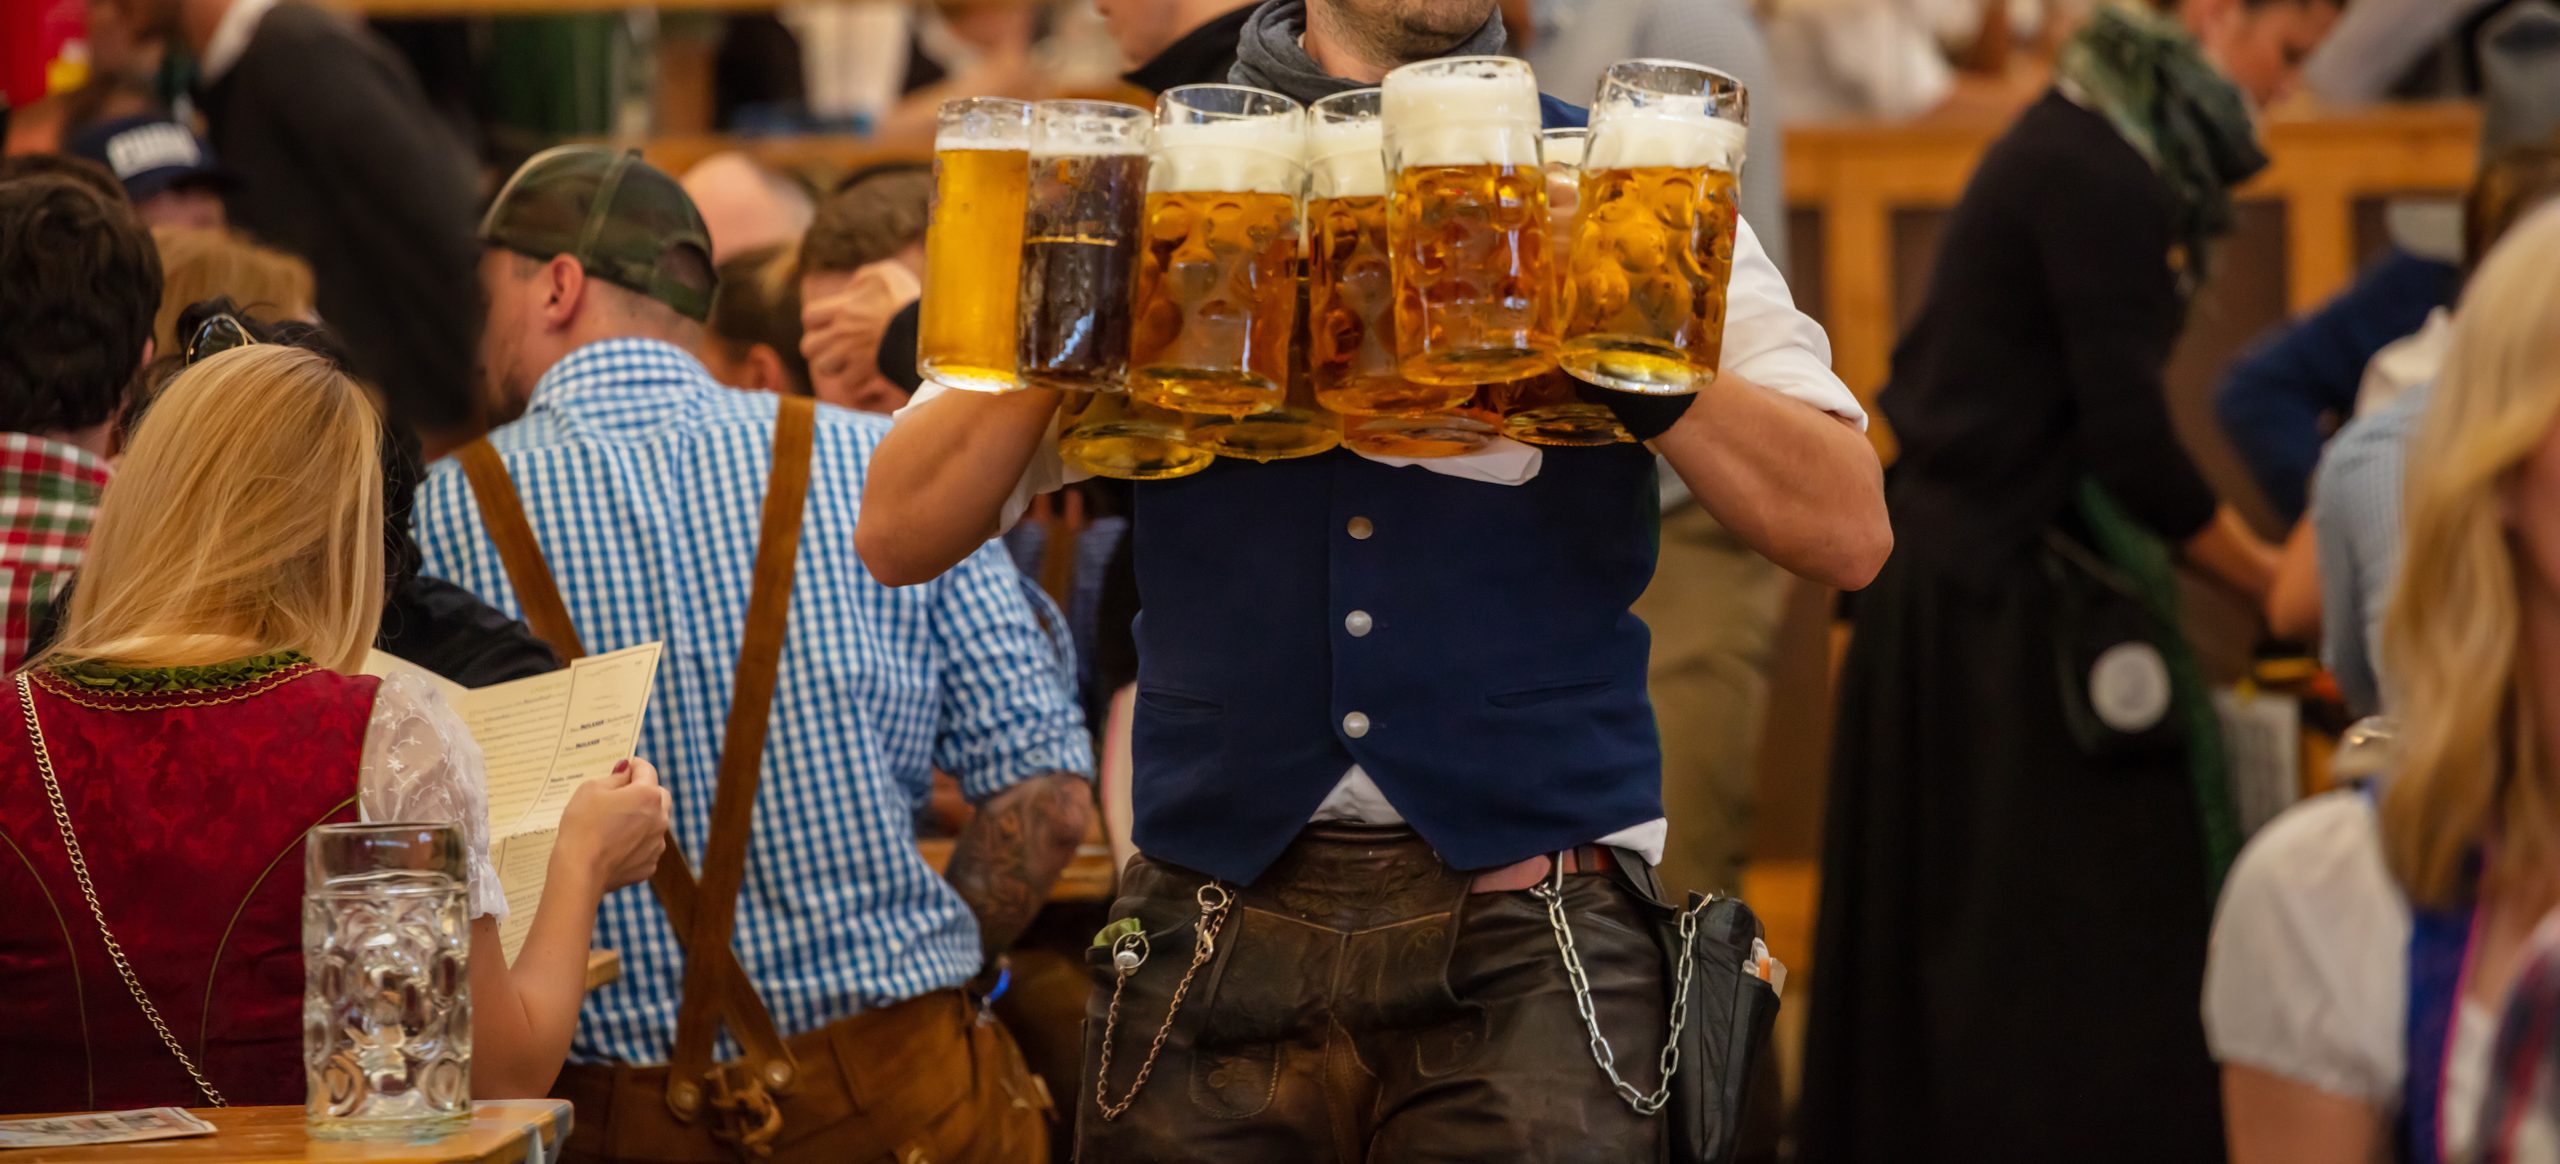 Oktoberfest, München, Deutschland. Kellner mit traditionellem Kostüm für Bier, Nahaufnahme